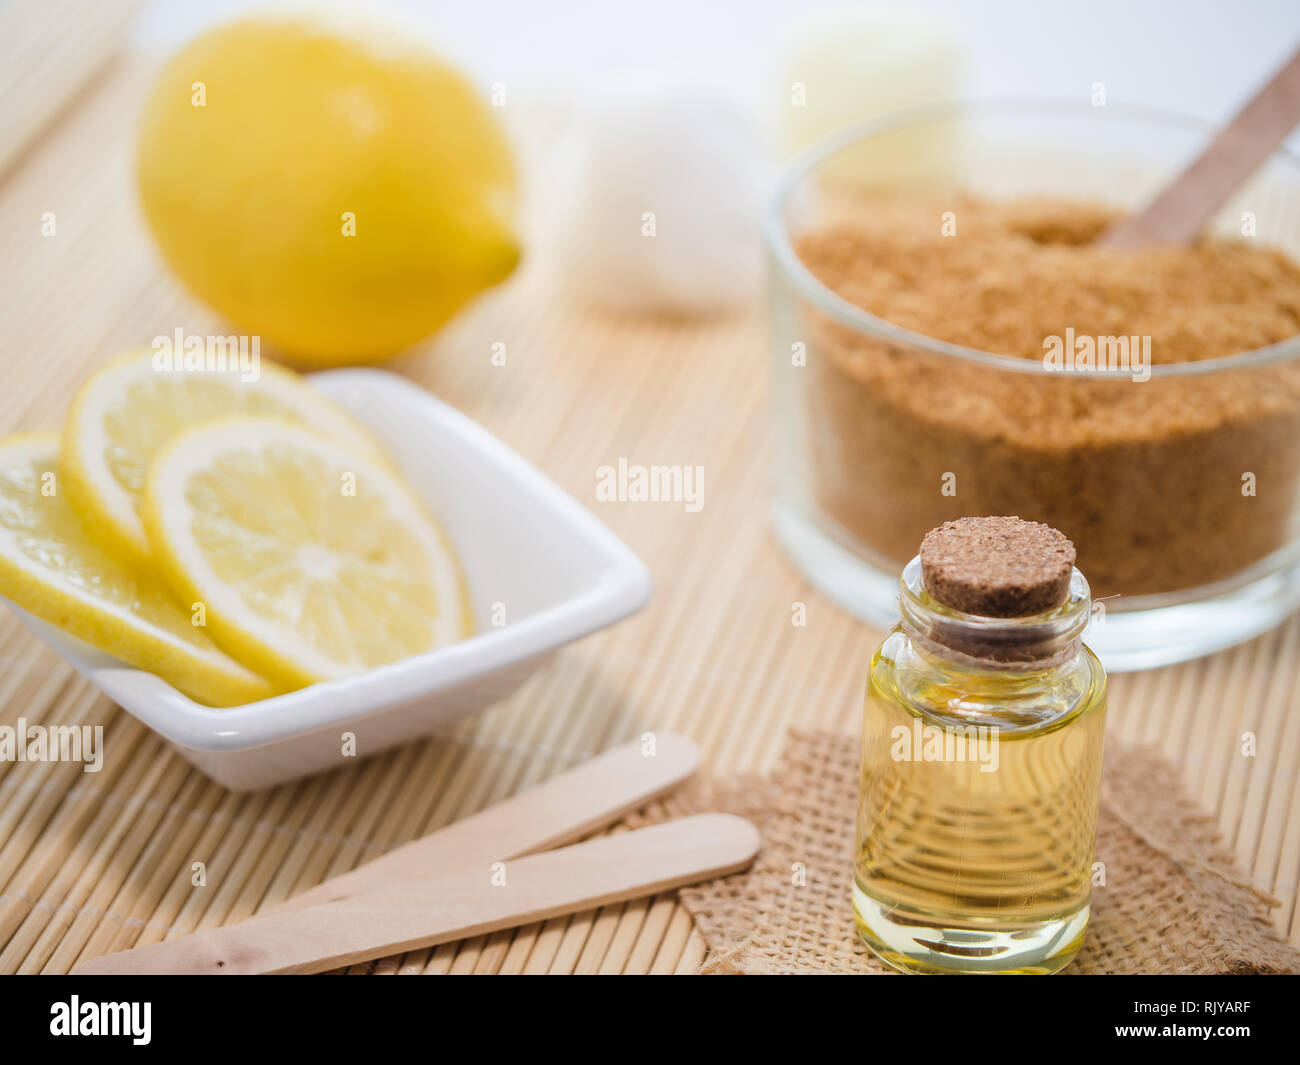 Productos naturales para el cuidado de la piel para máscara corporal  exfoliante ingredientes: jugo de limón, azúcar moreno, aceite de almendras  Fotografía de stock - Alamy